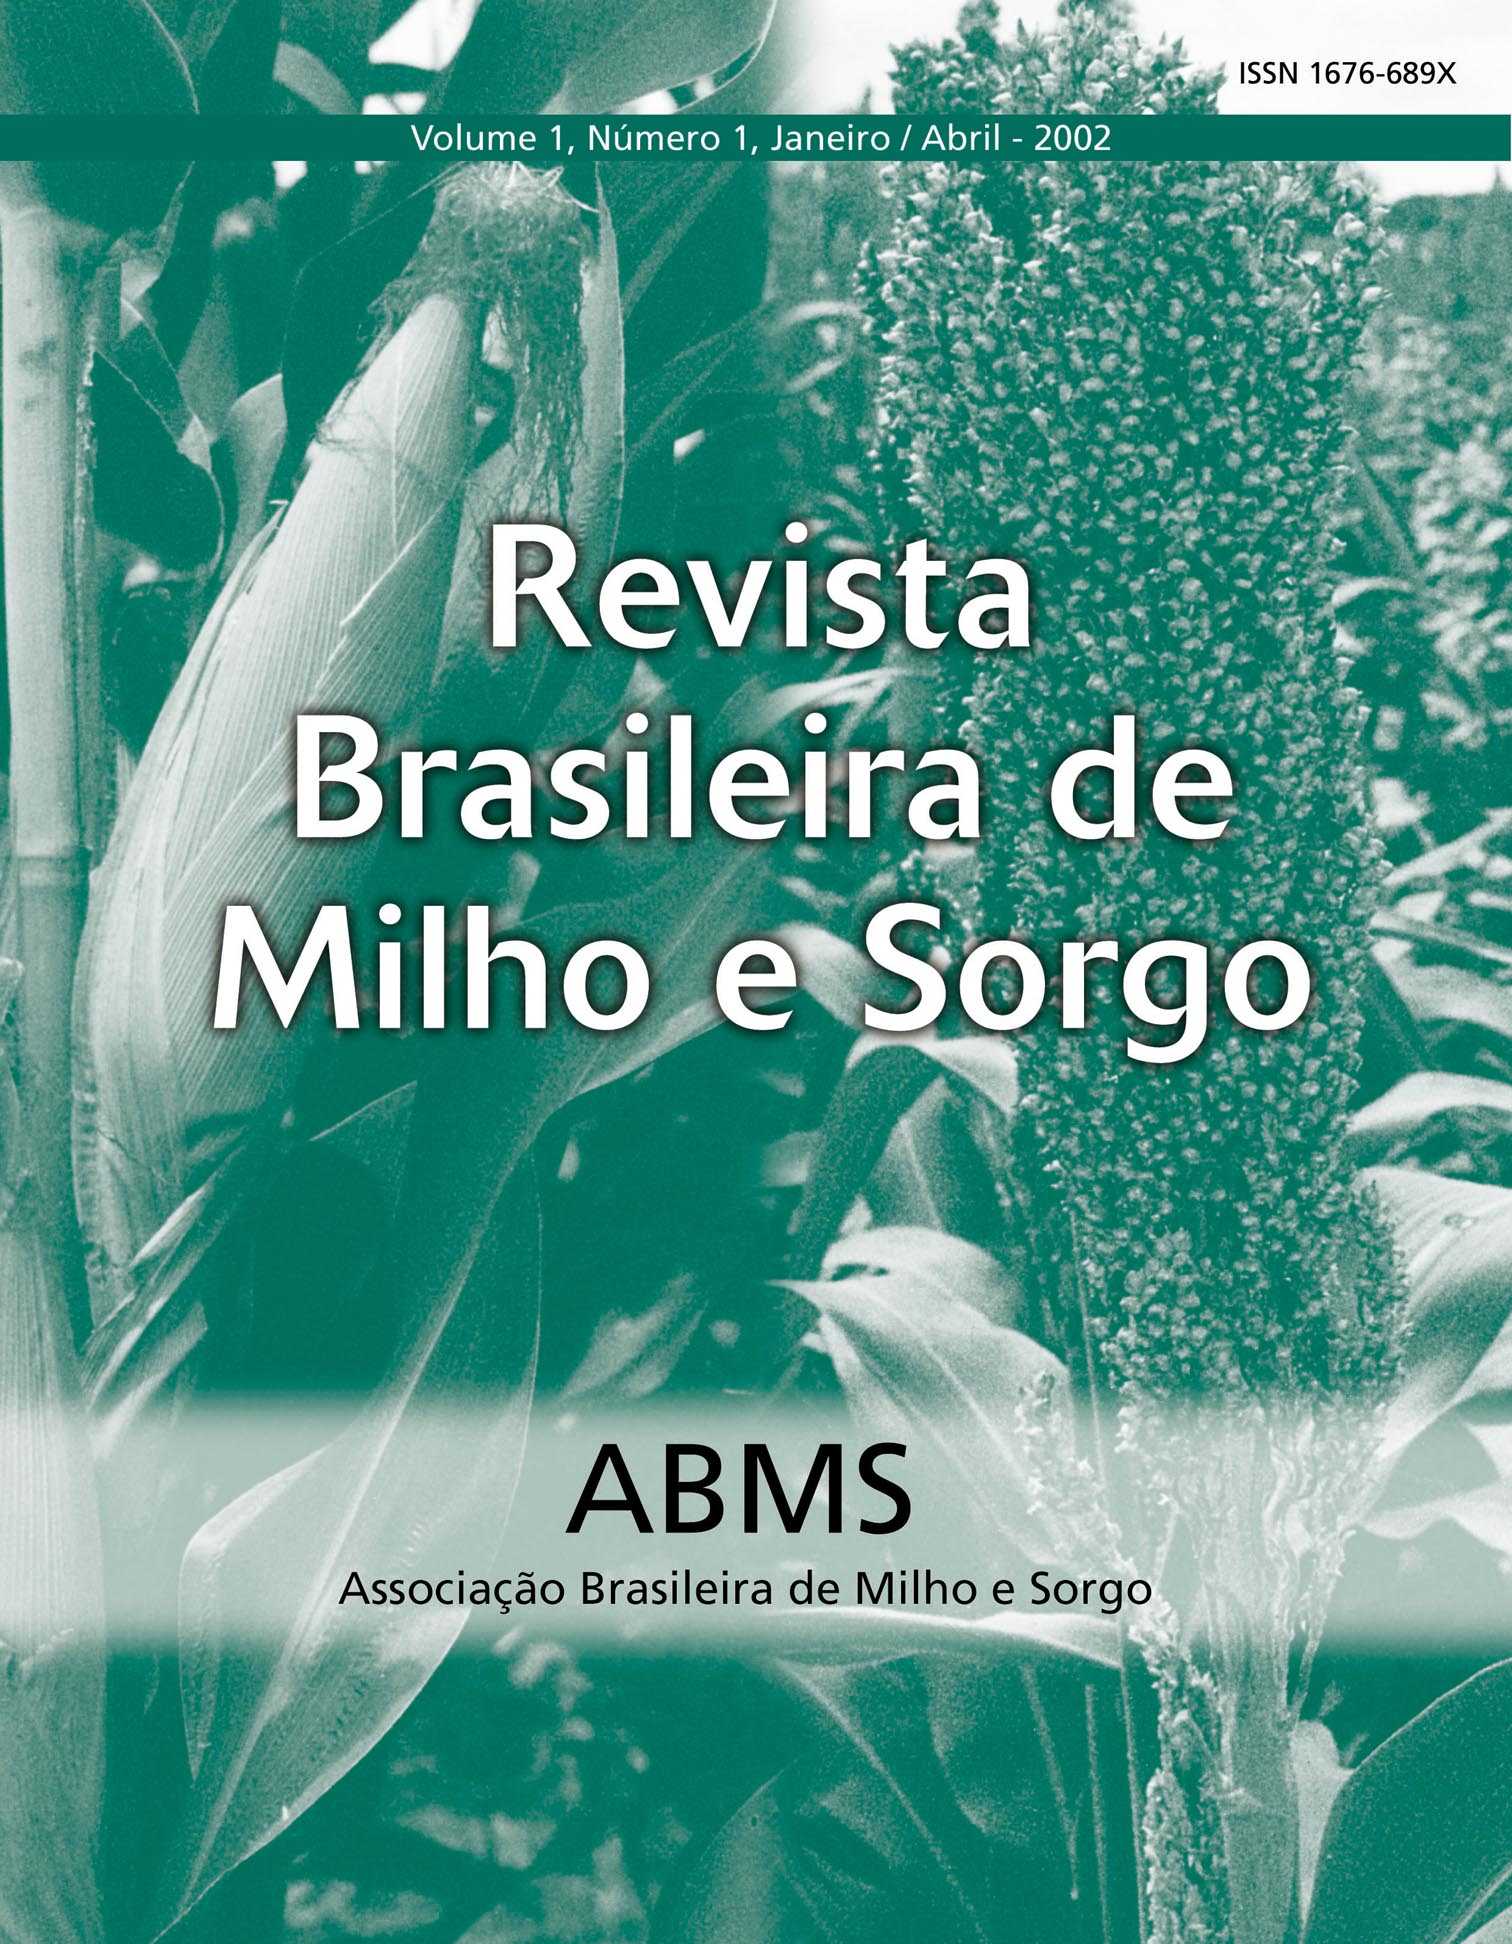 Revista Brasileira de Milho e Sorgo/Brazilian Journal of Maize and Sorghum